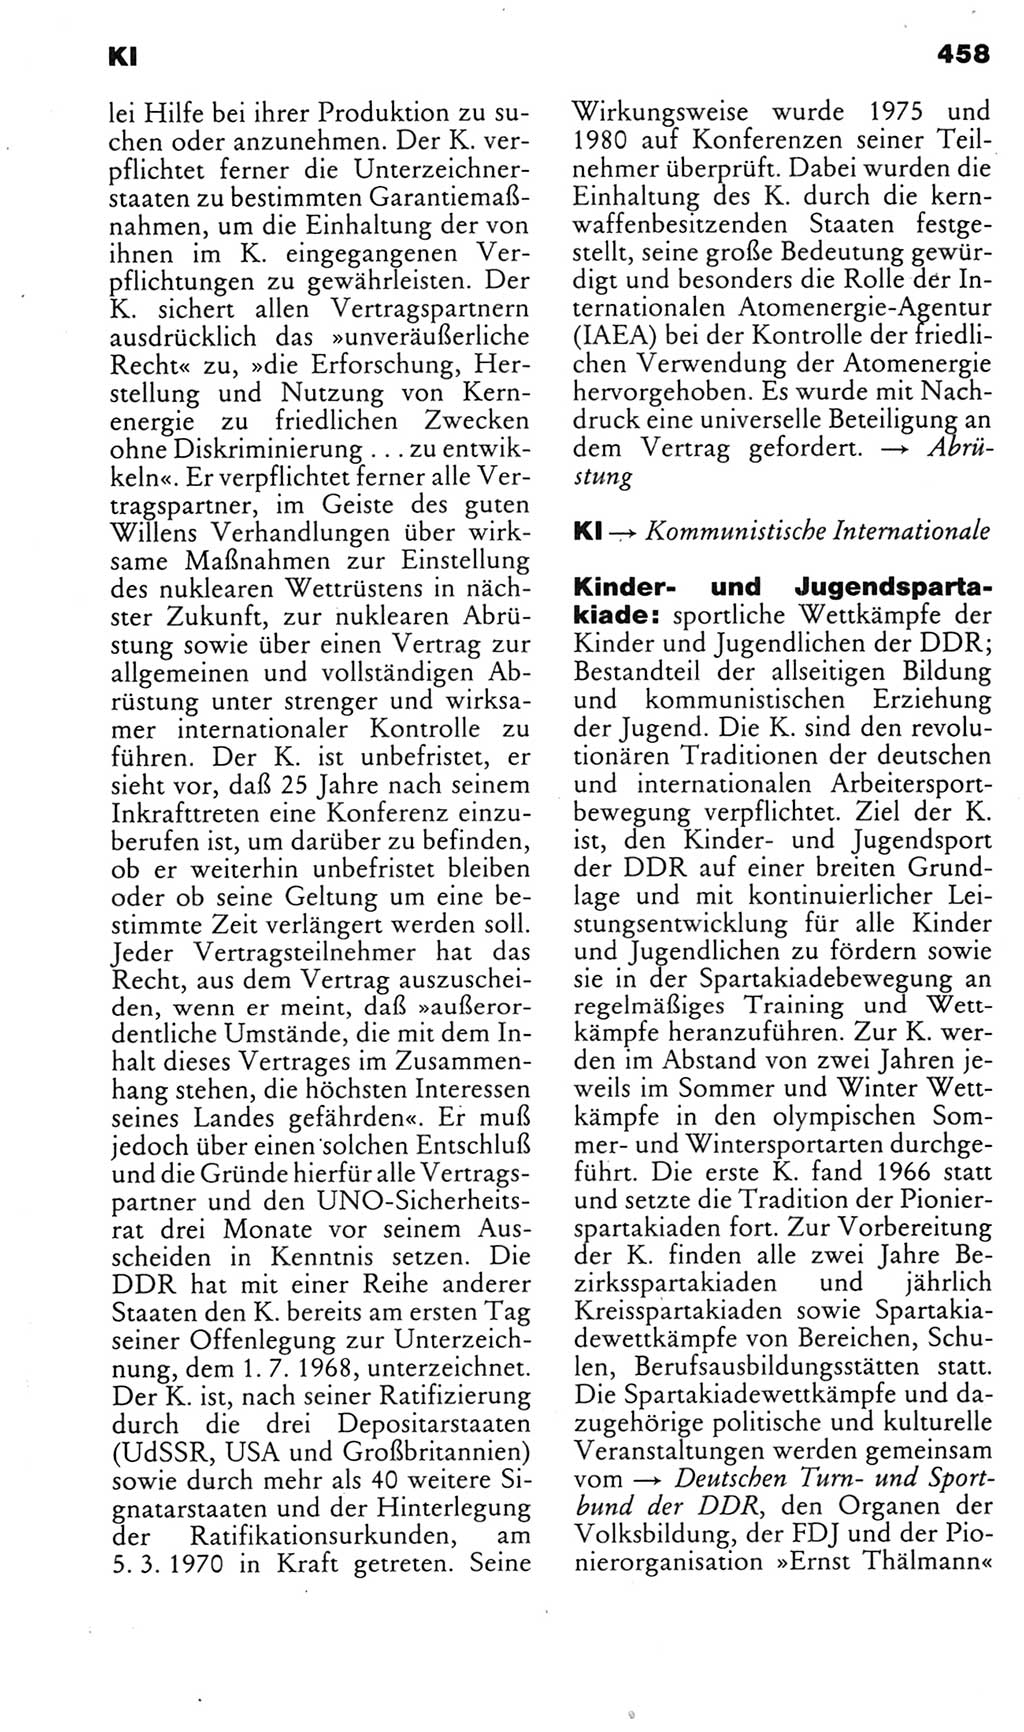 Kleines politisches Wörterbuch [Deutsche Demokratische Republik (DDR)] 1985, Seite 458 (Kl. pol. Wb. DDR 1985, S. 458)